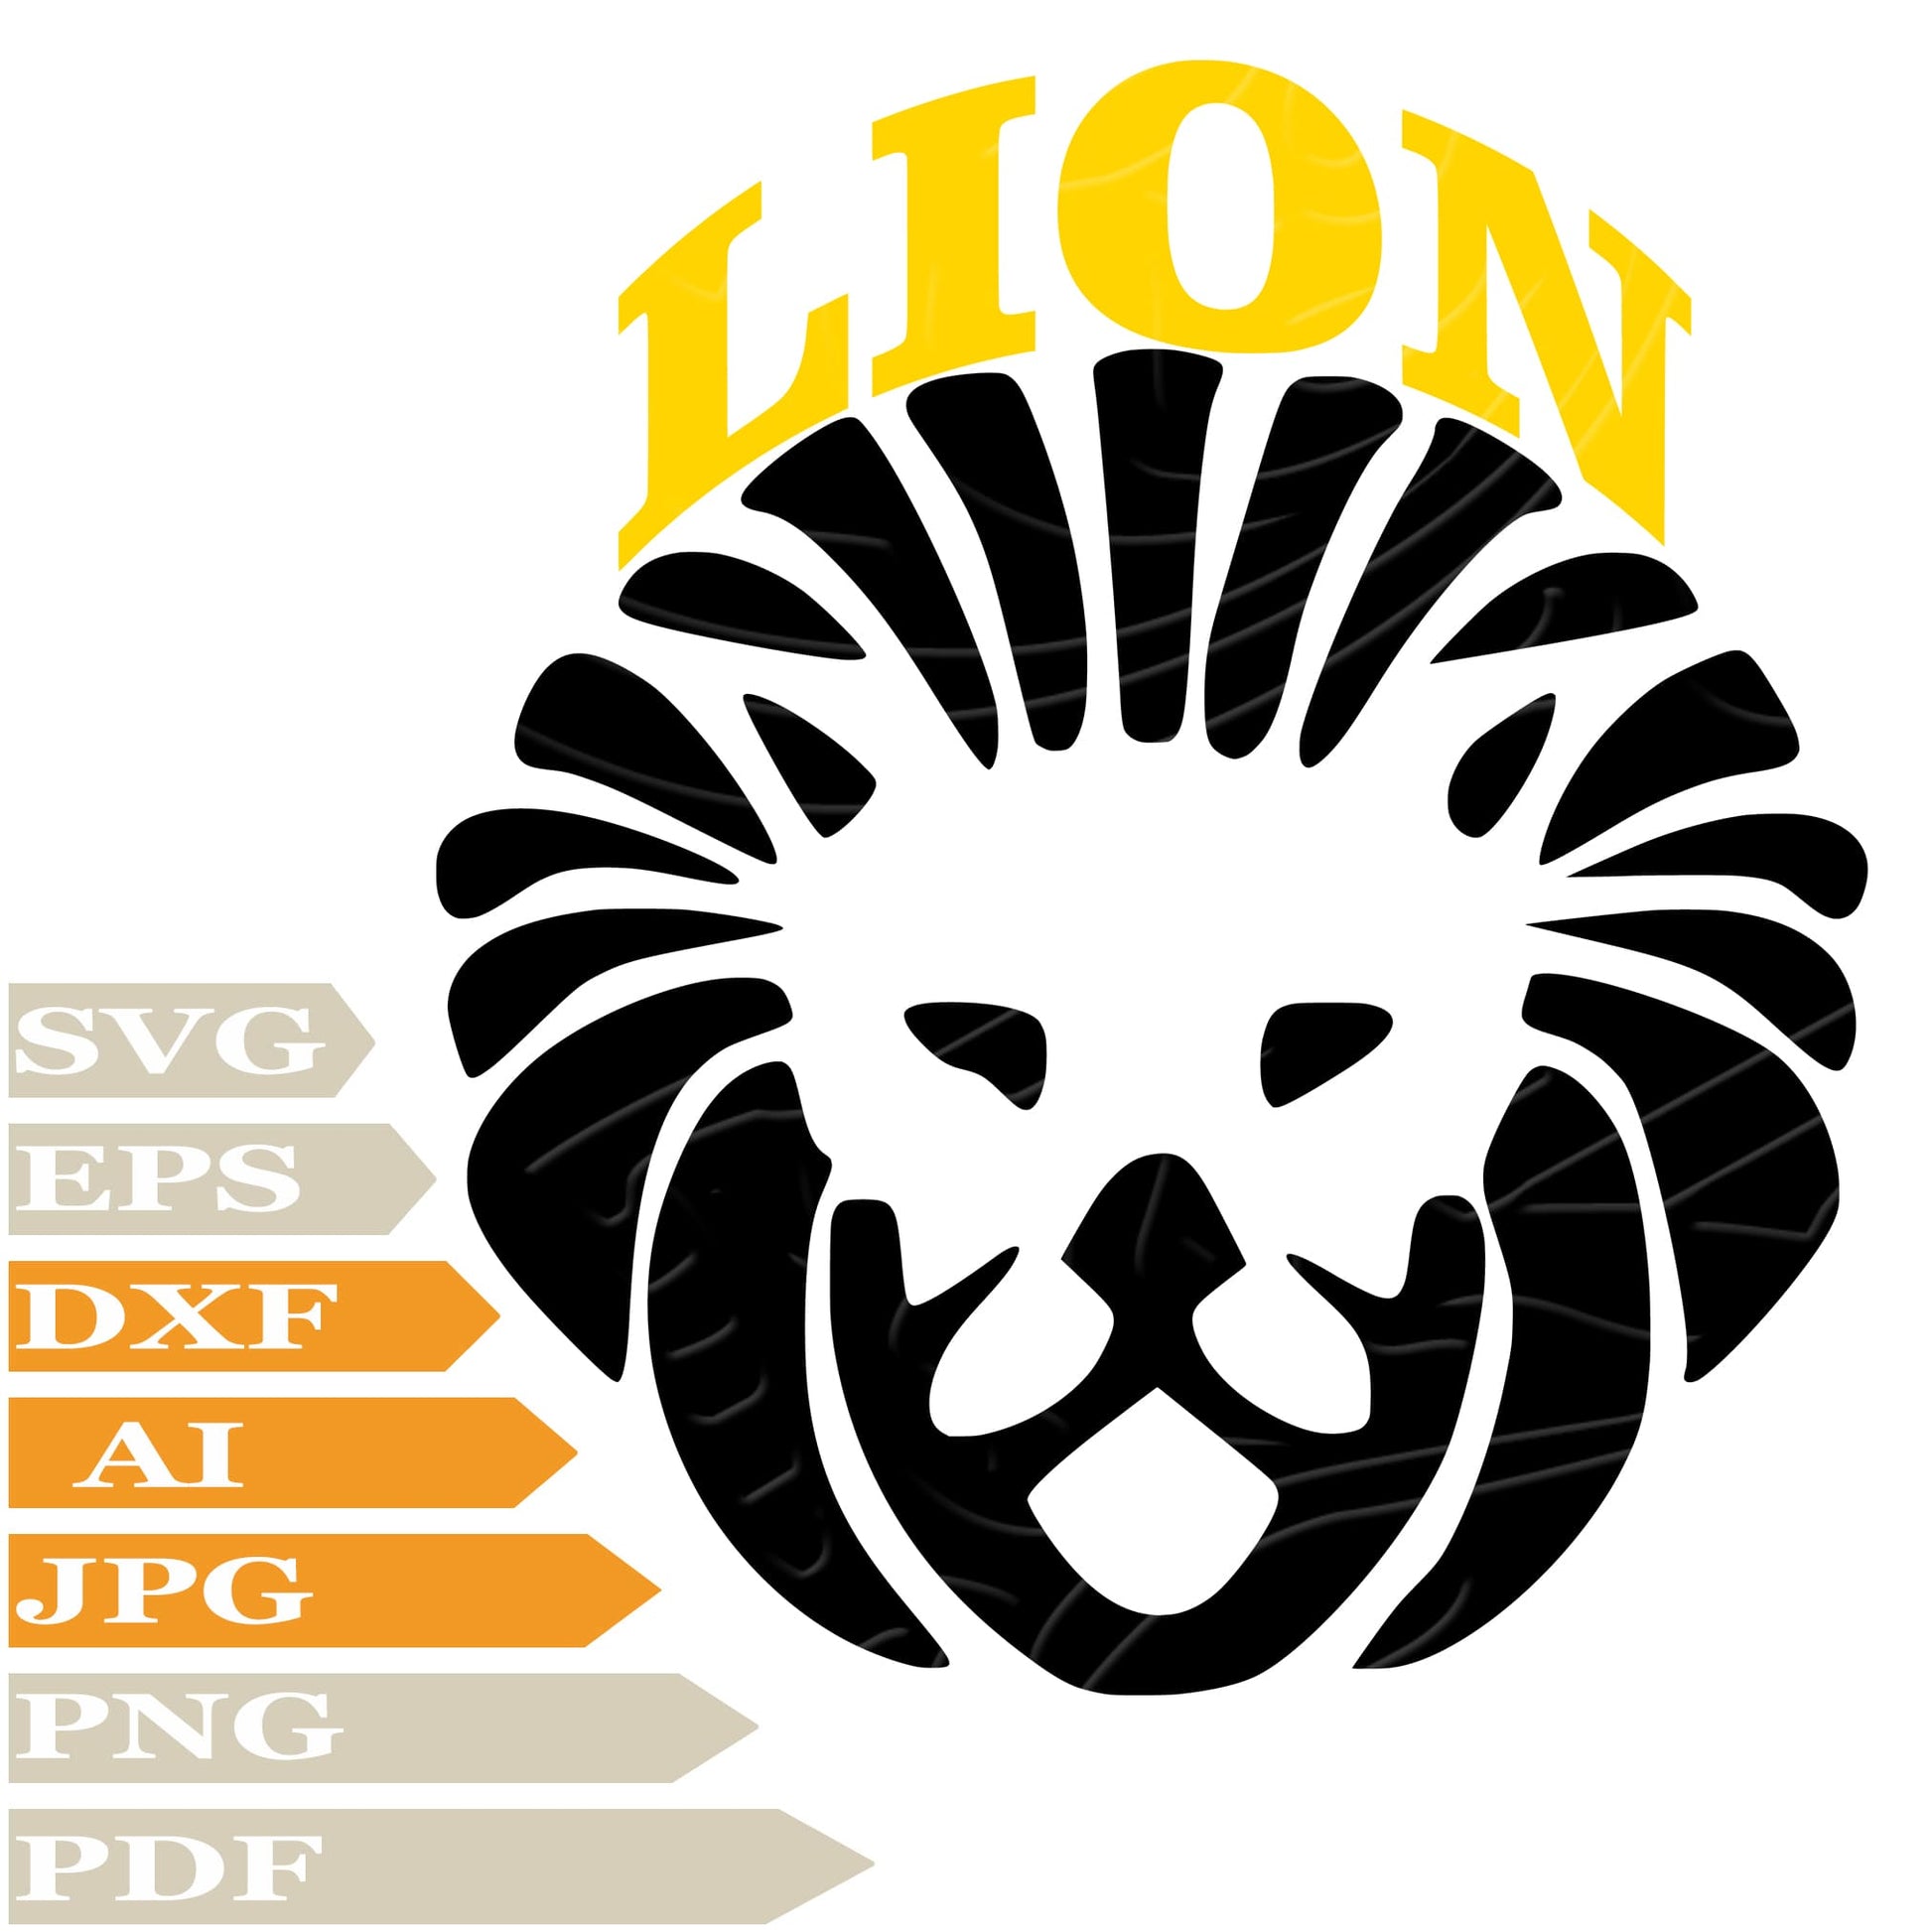 Lion SVG, Wild Lion Head SVG Design, King Lion Vector Graphics, Lion For Cricut, Digital Instant Download, Clip Art, Cut File, T-Shirts, Silhouette